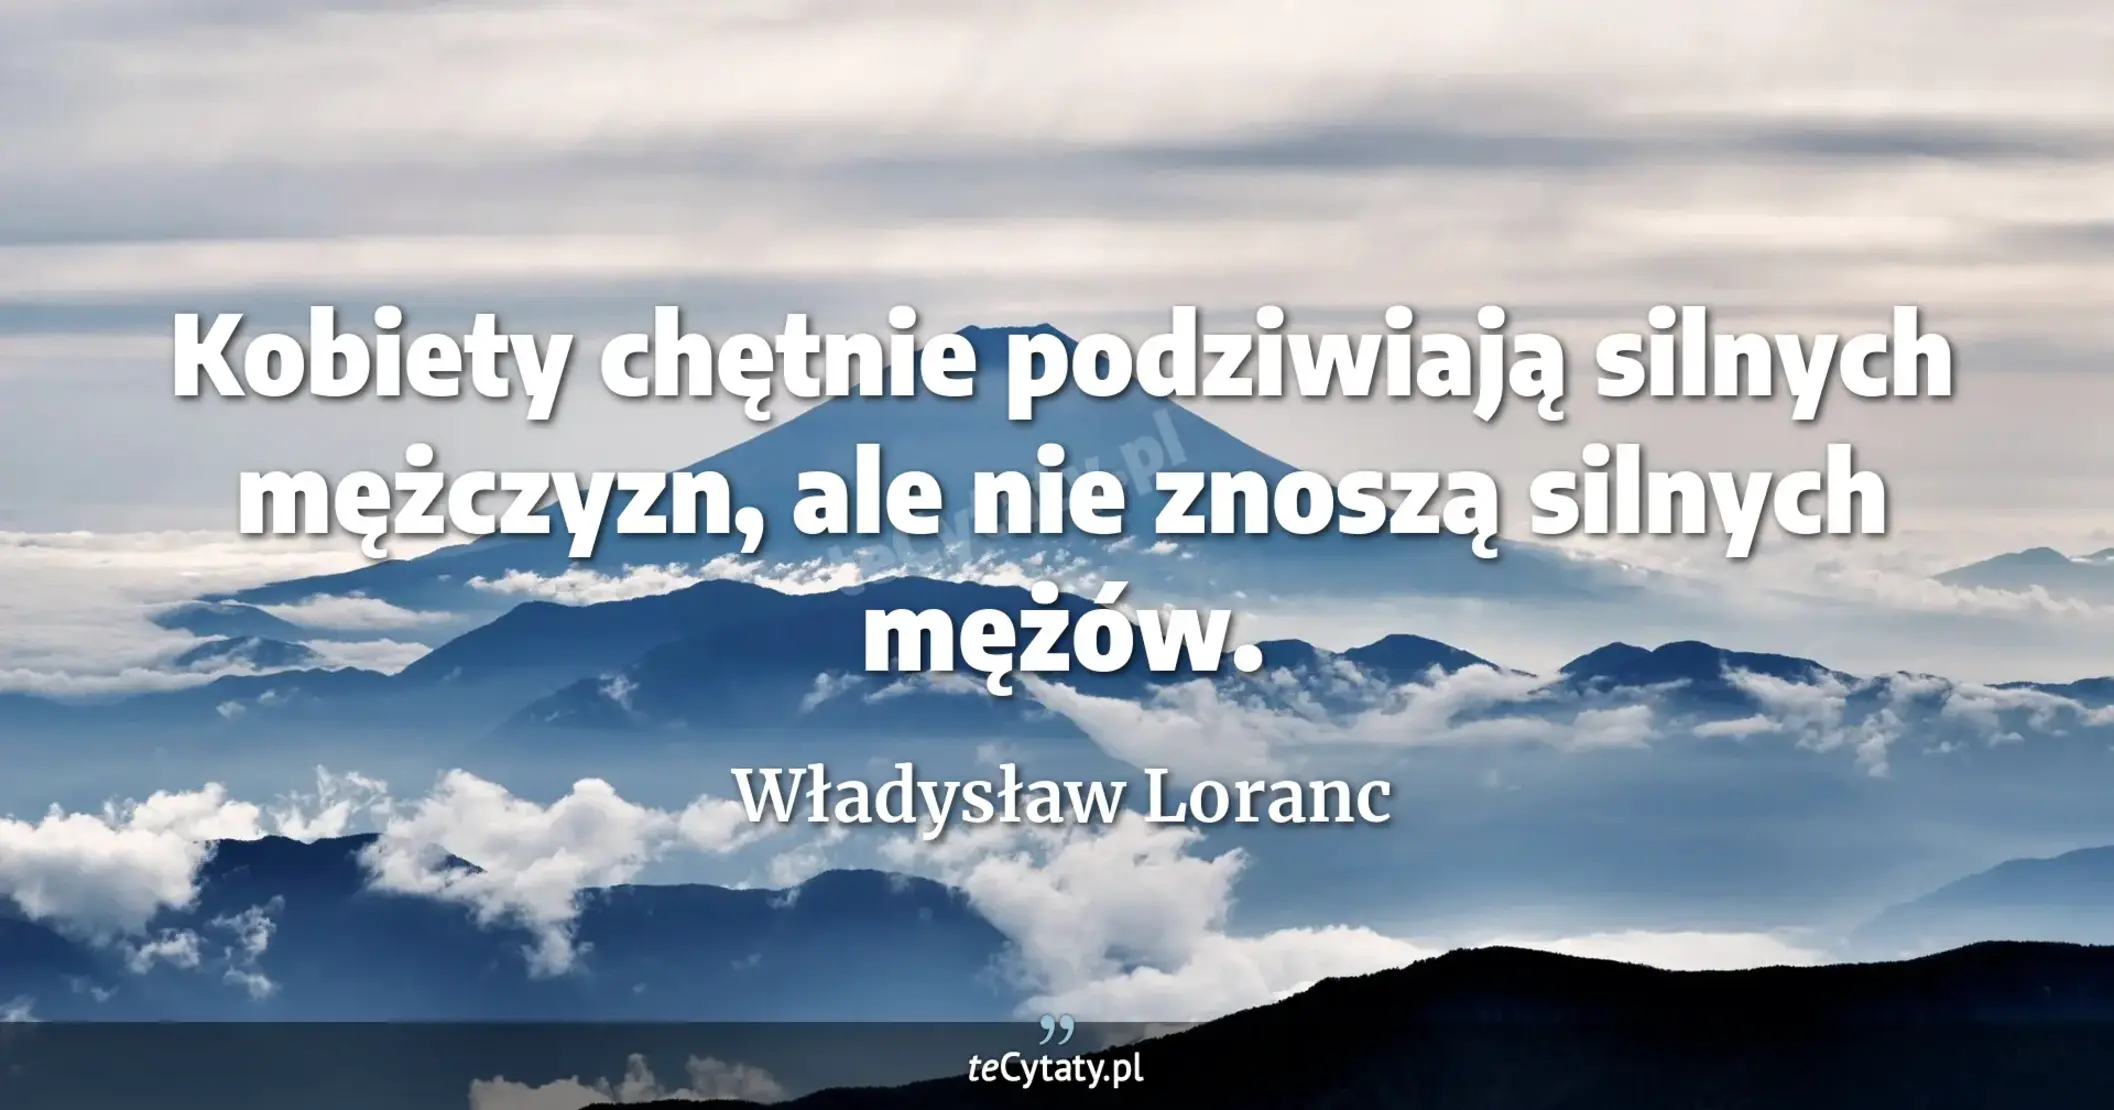 Kobiety chętnie podziwiają silnych mężczyzn, ale nie znoszą silnych mężów. - Władysław Loranc